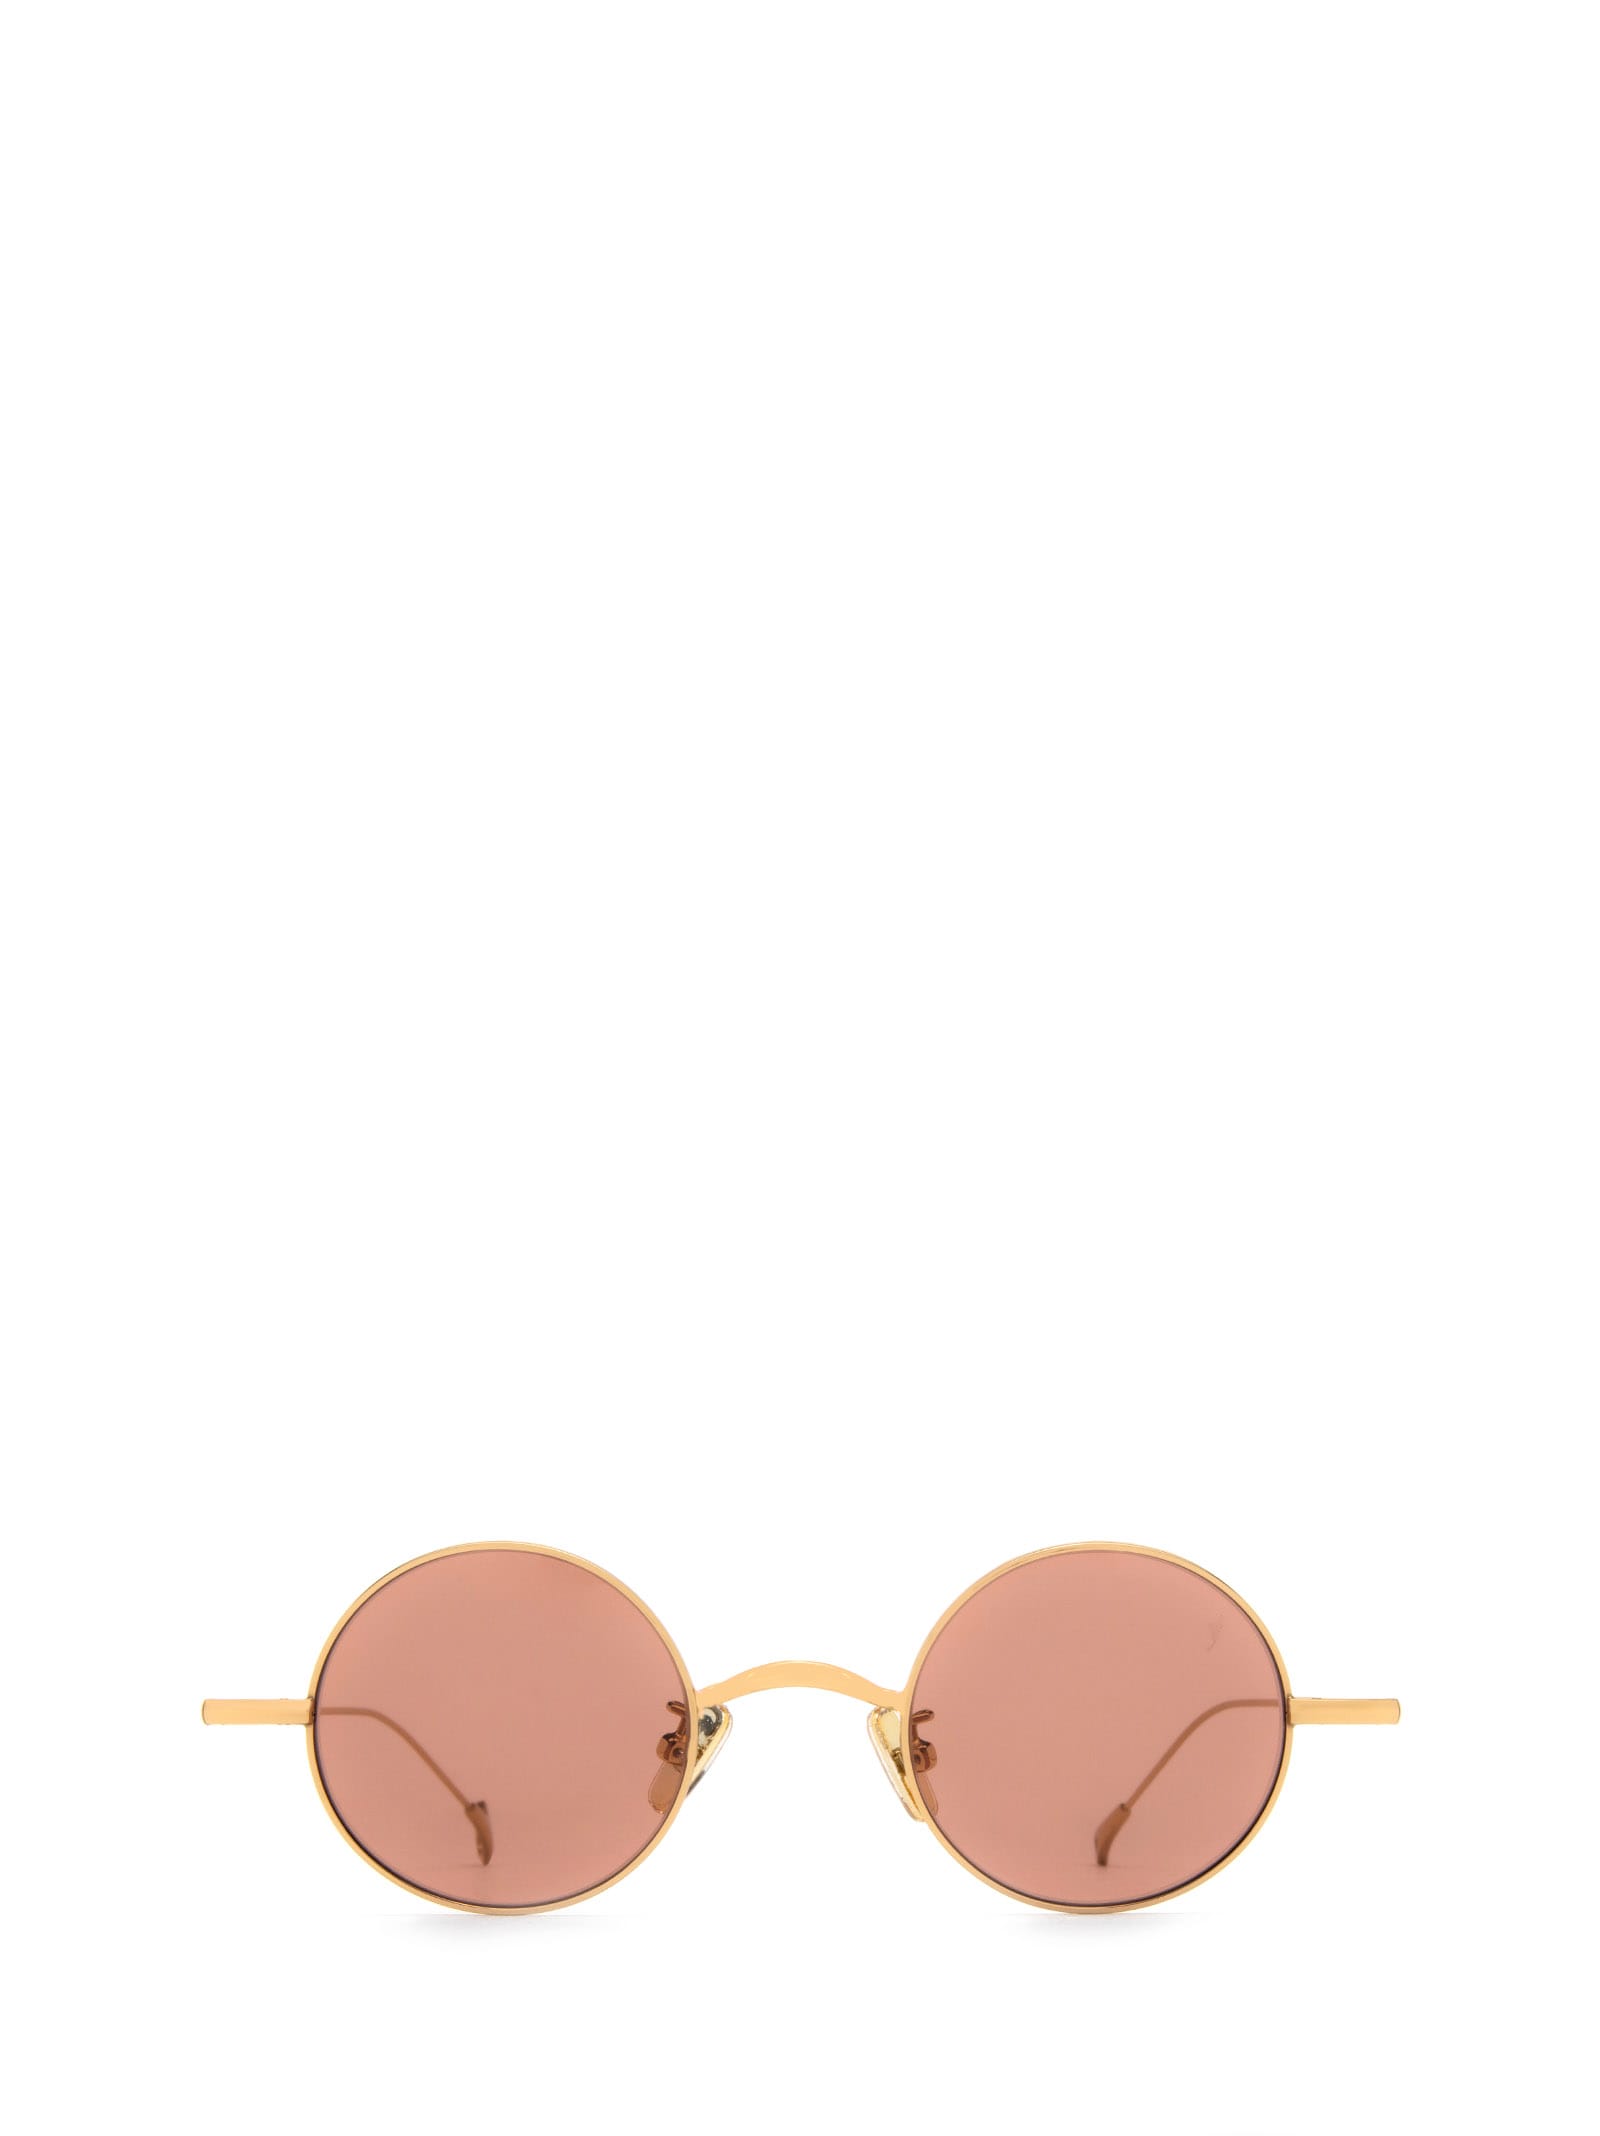 Jeremy Gold Sunglasses